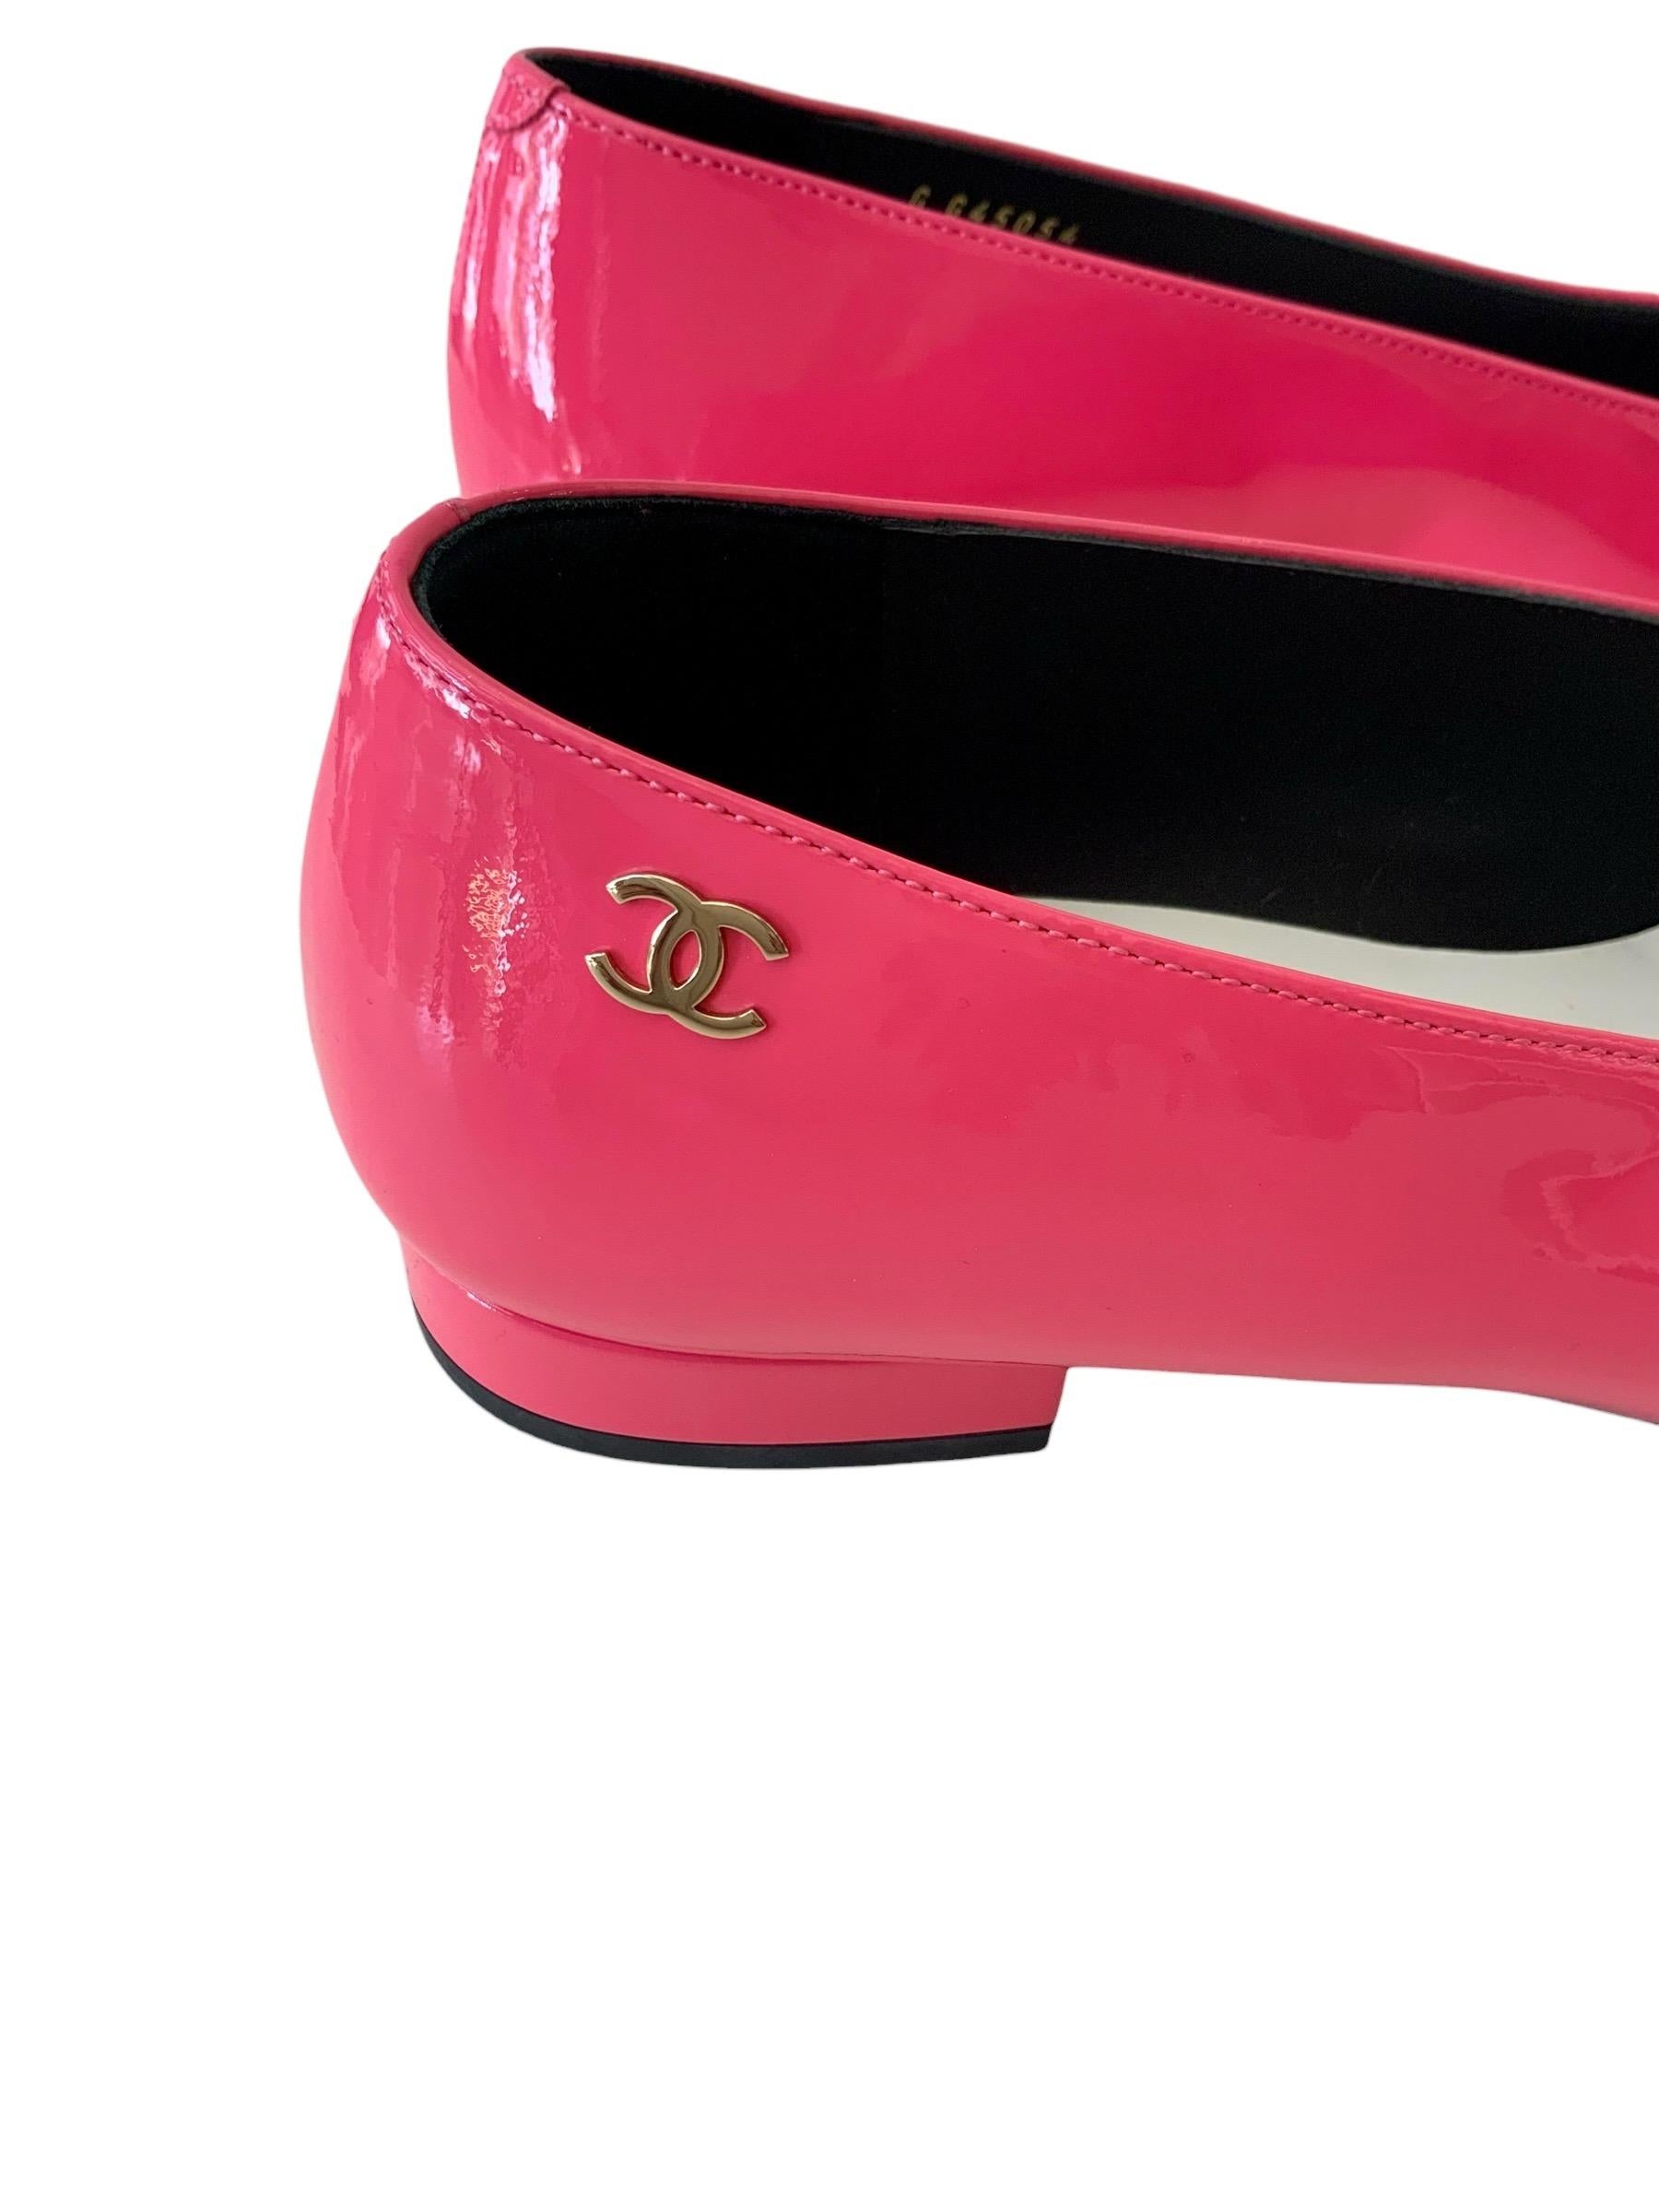 Pinkfarbene Lackballerinas mit schwarzer Lackkappe aus dem Hause Chanel. 
Ein Muss für diesen Sommer.....
Nie getragen !

MATERIAL: Lackleder
Farbe: Rosa und schwarz
Sohle: Schwarzes Leder
Größe: 38C
Absatz: 1,9 cm - ca. 0,74